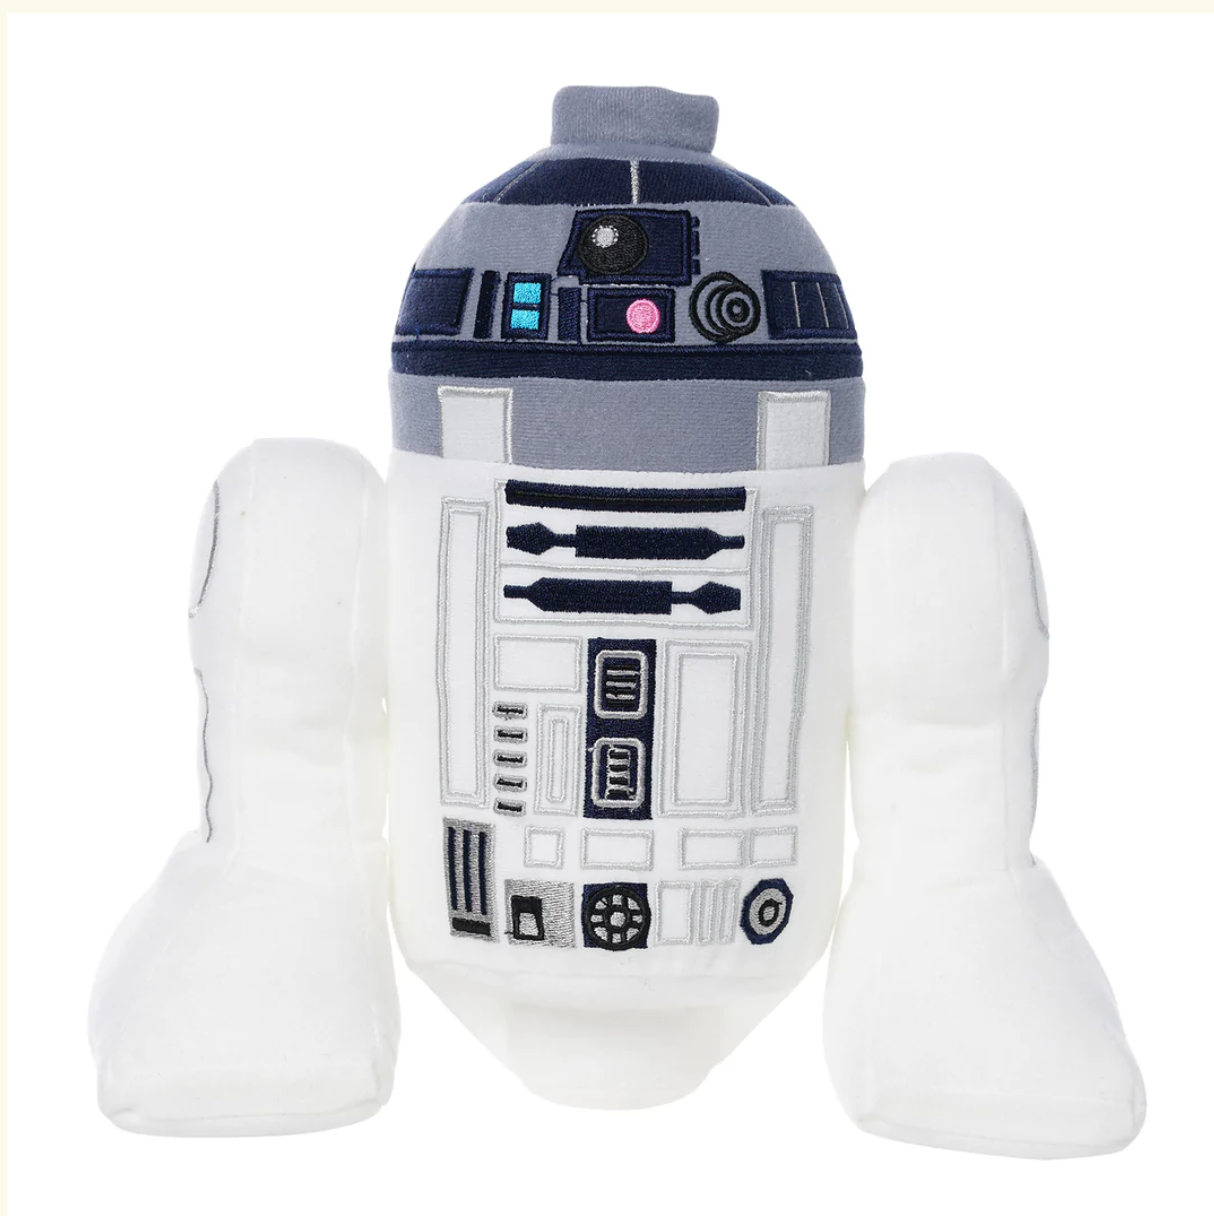 Lego Star Wars R2-D2